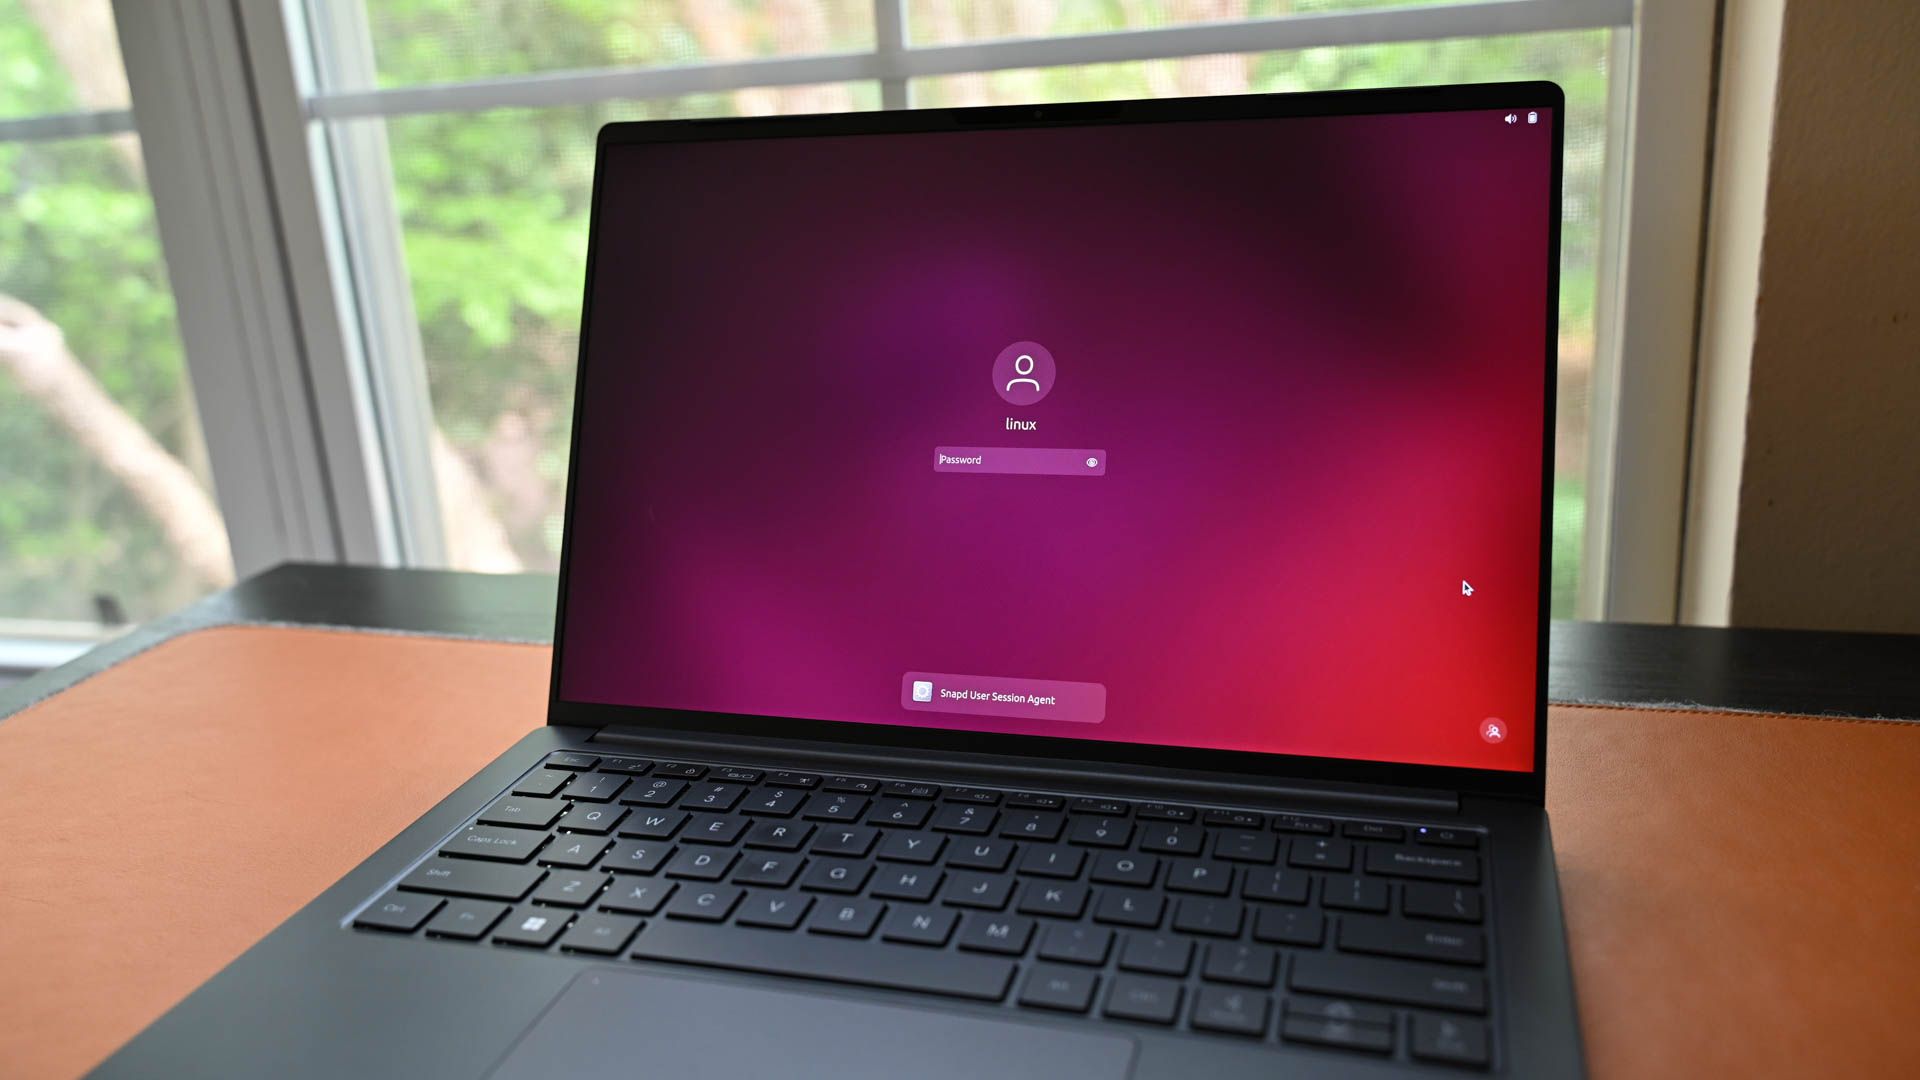 A locked laptop running Ubuntu. 